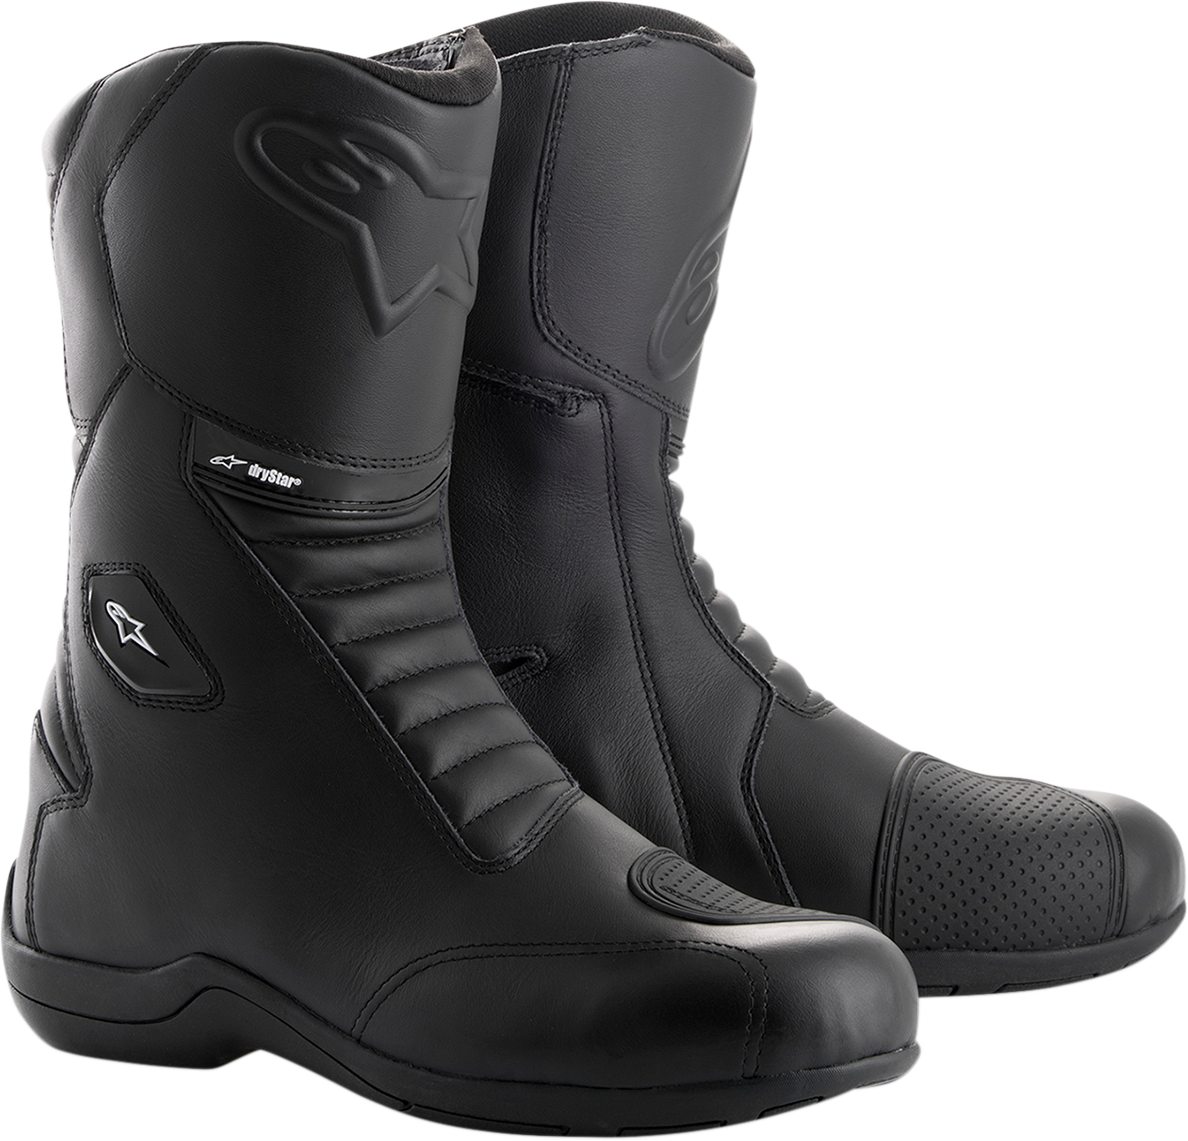 ALPINESTARS Andes v2 Drystar® Boots - Black - US 6.5 / EU 40 2447018-10-40